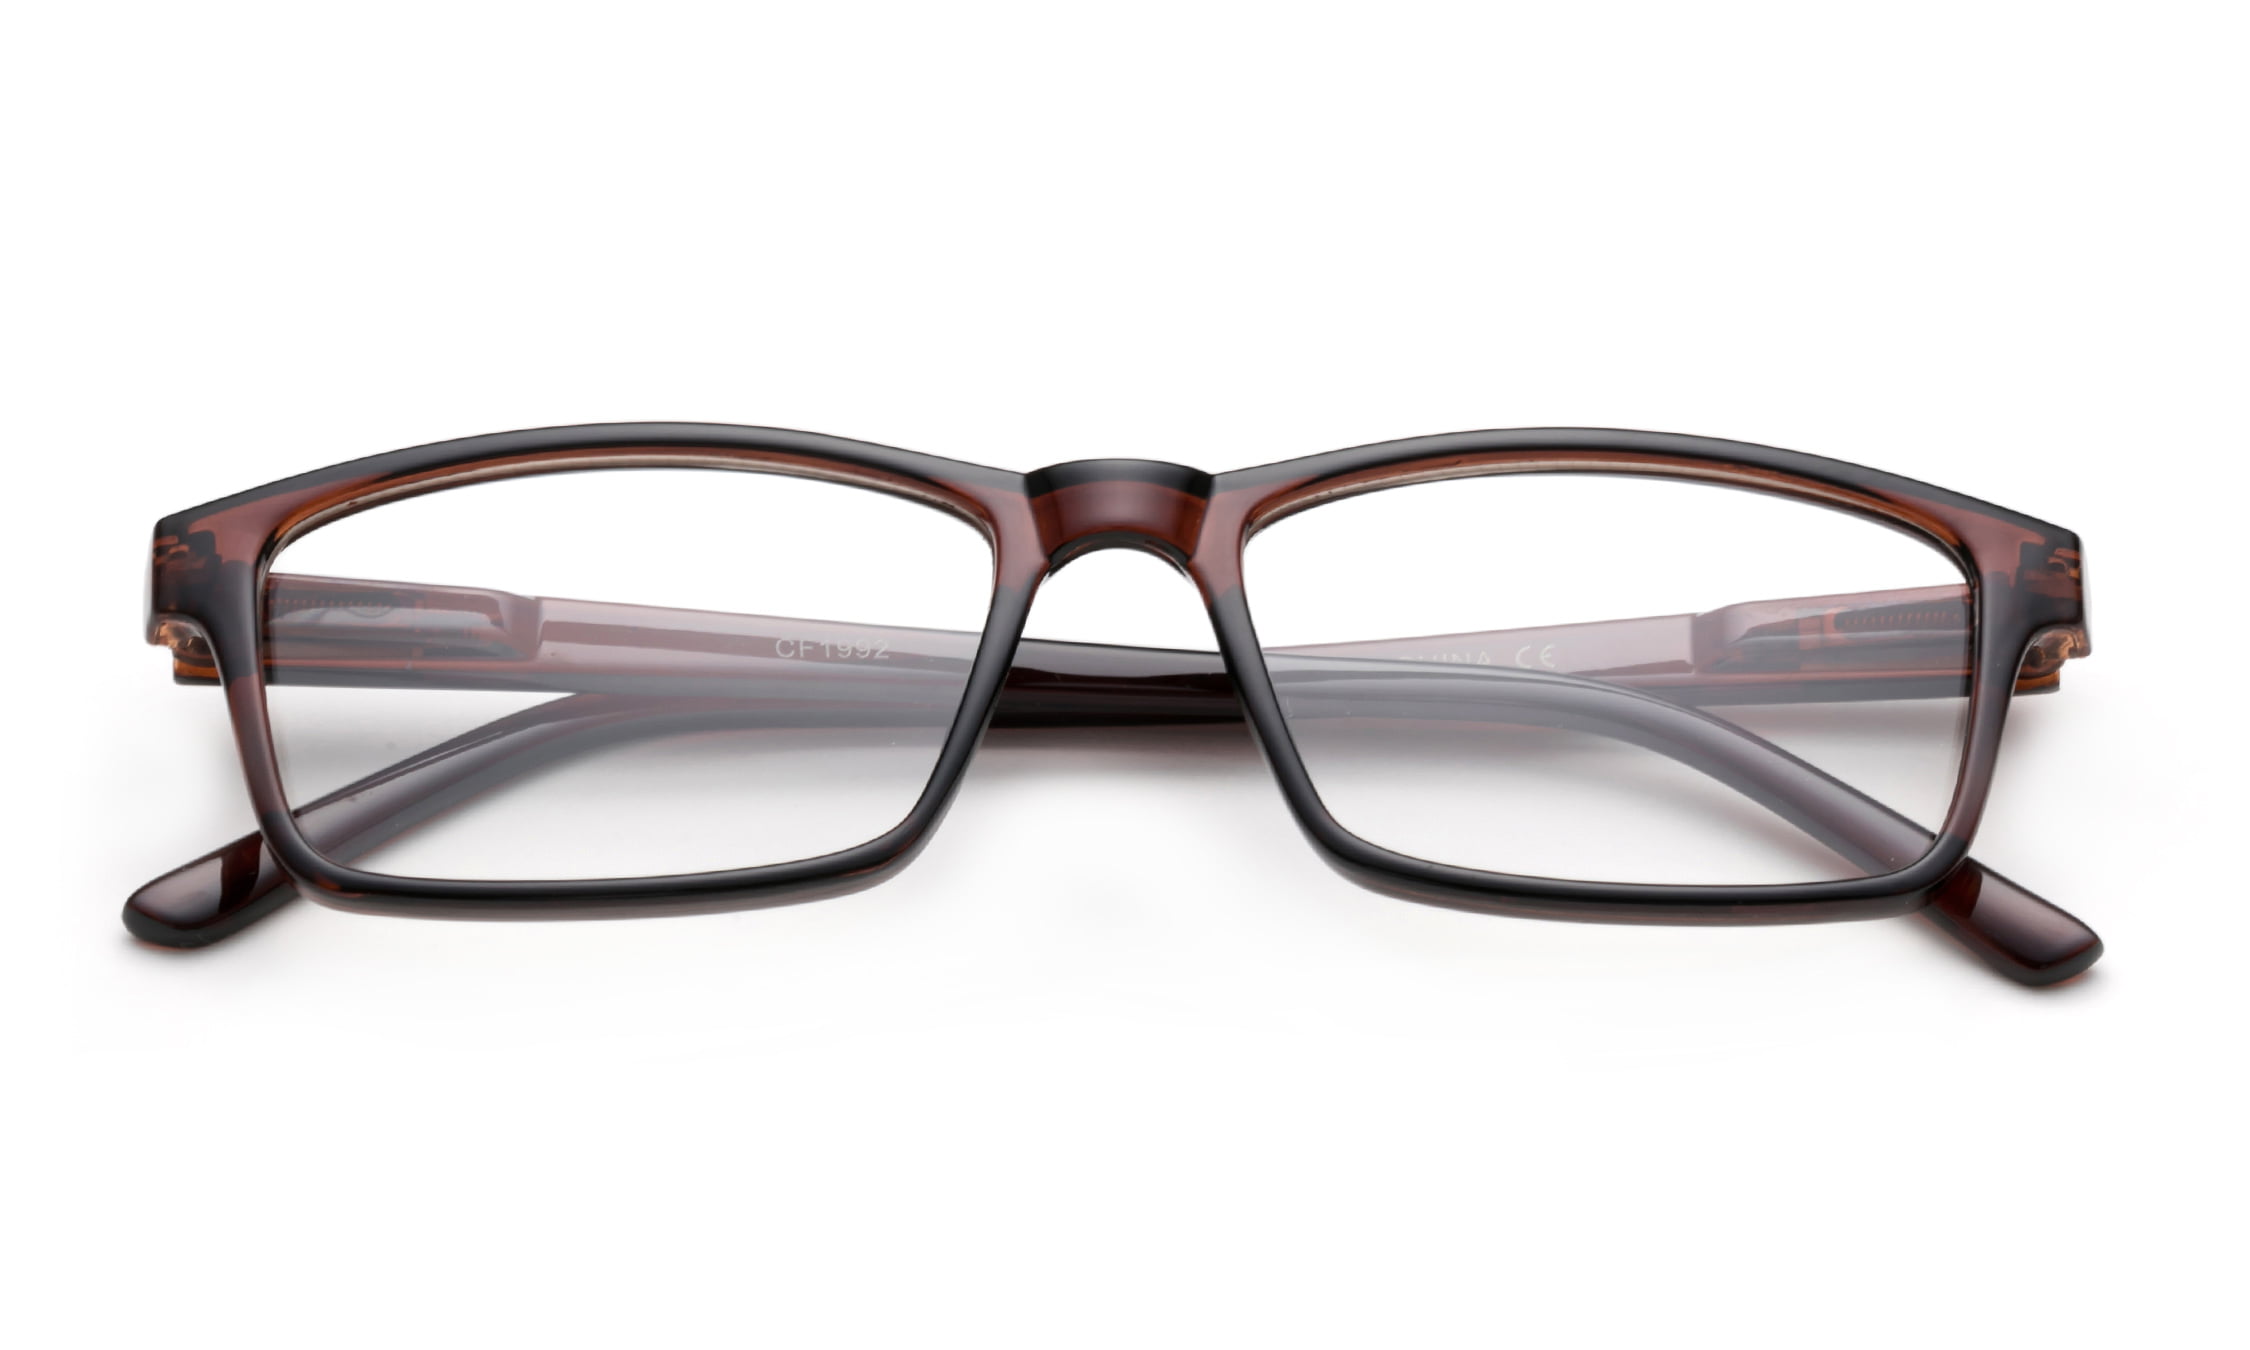 Quik Oversized - Newbee Fashion ®  Stylish eyeglasses, Chanel glasses,  Spring hinge